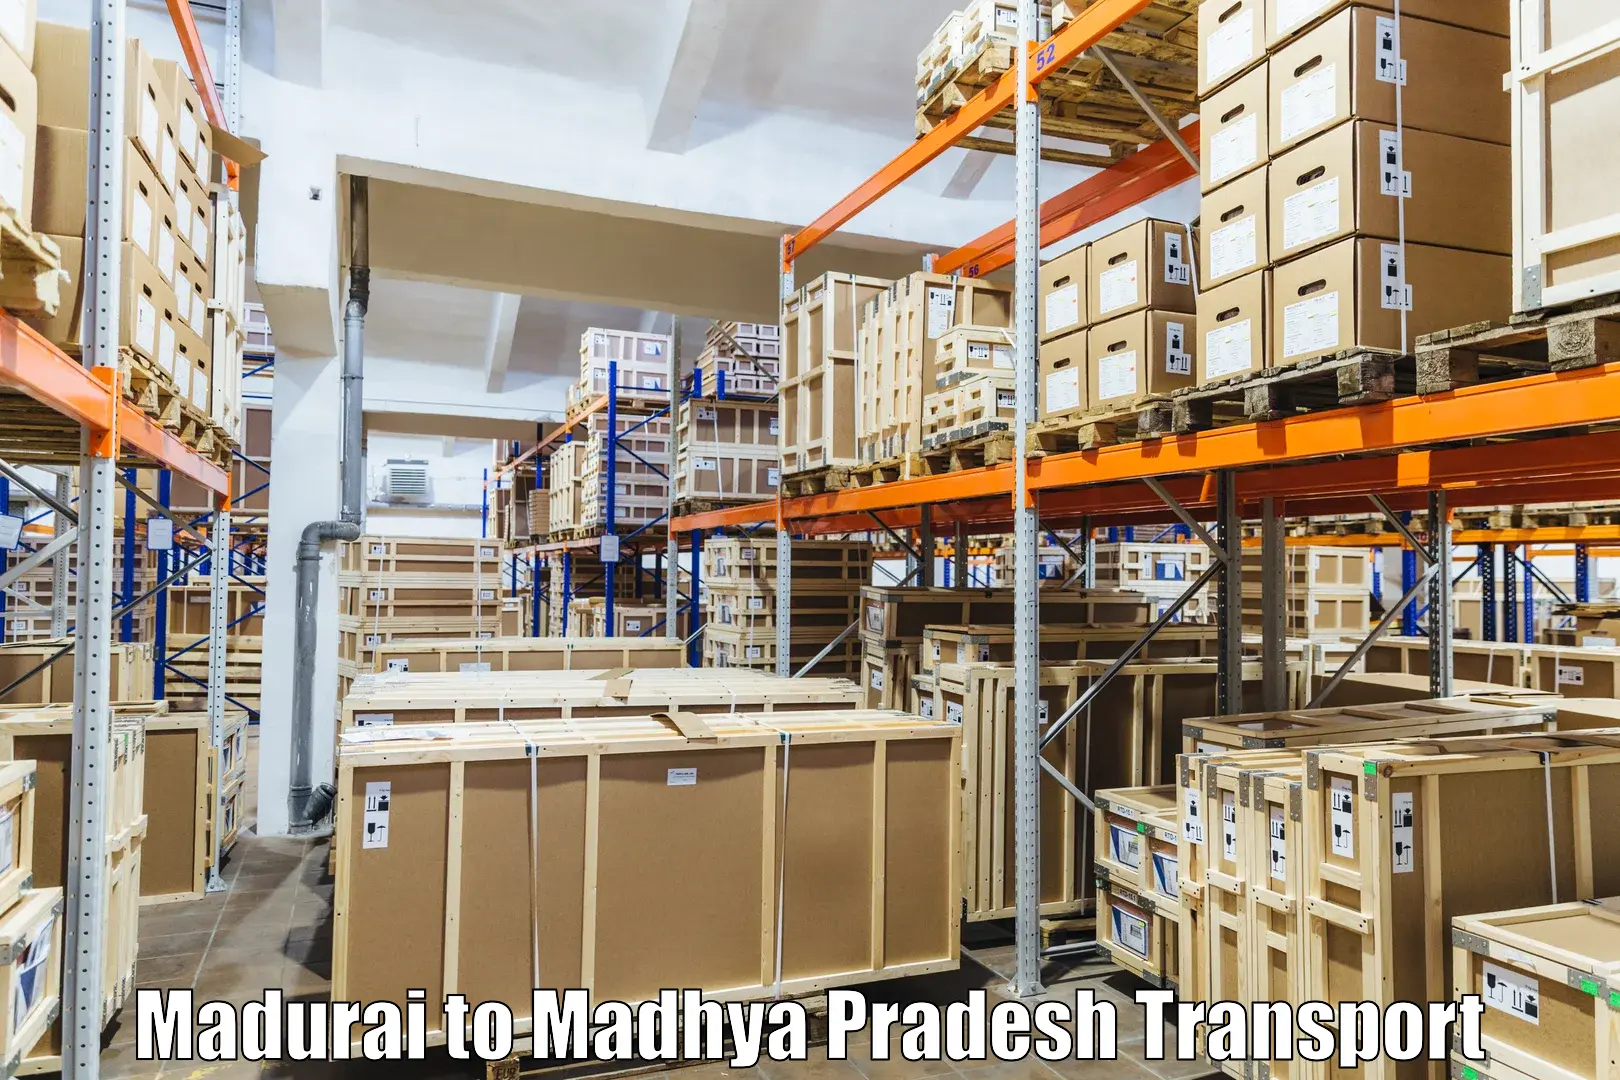 Truck transport companies in India Madurai to Ratlam